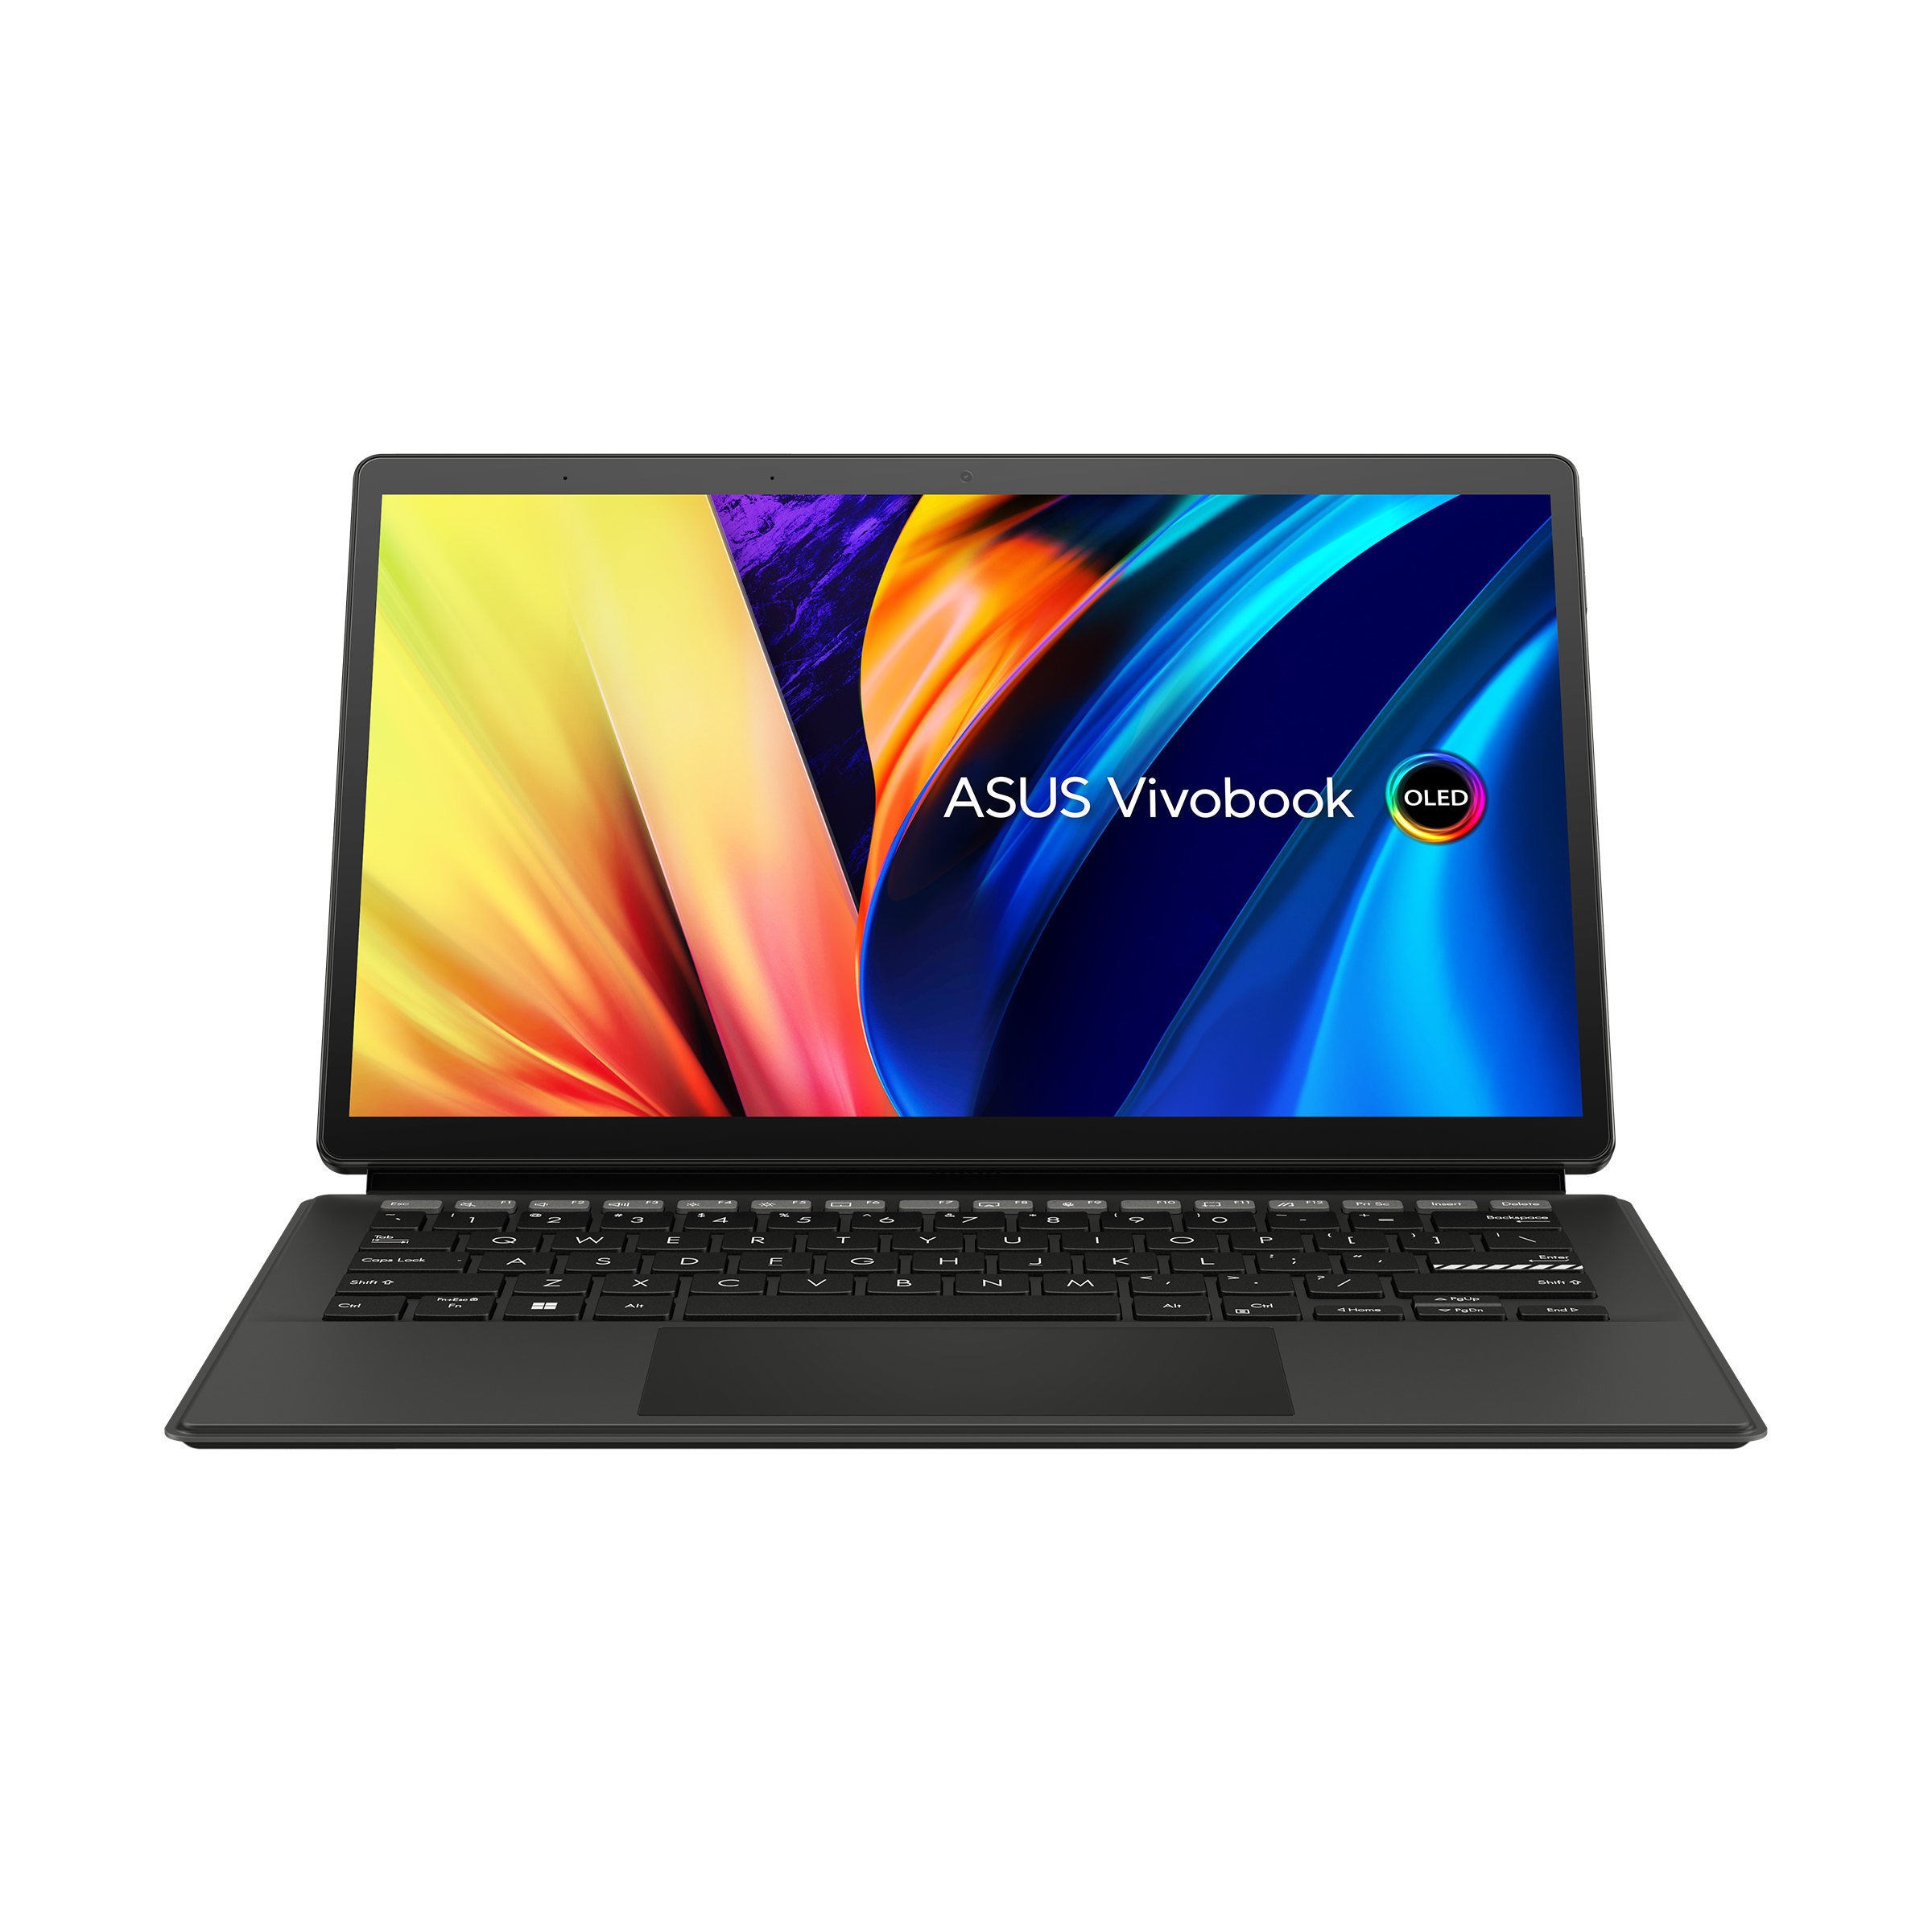 vivobook-13-slate-oled-t3300-laptops-for-home-asus-usa